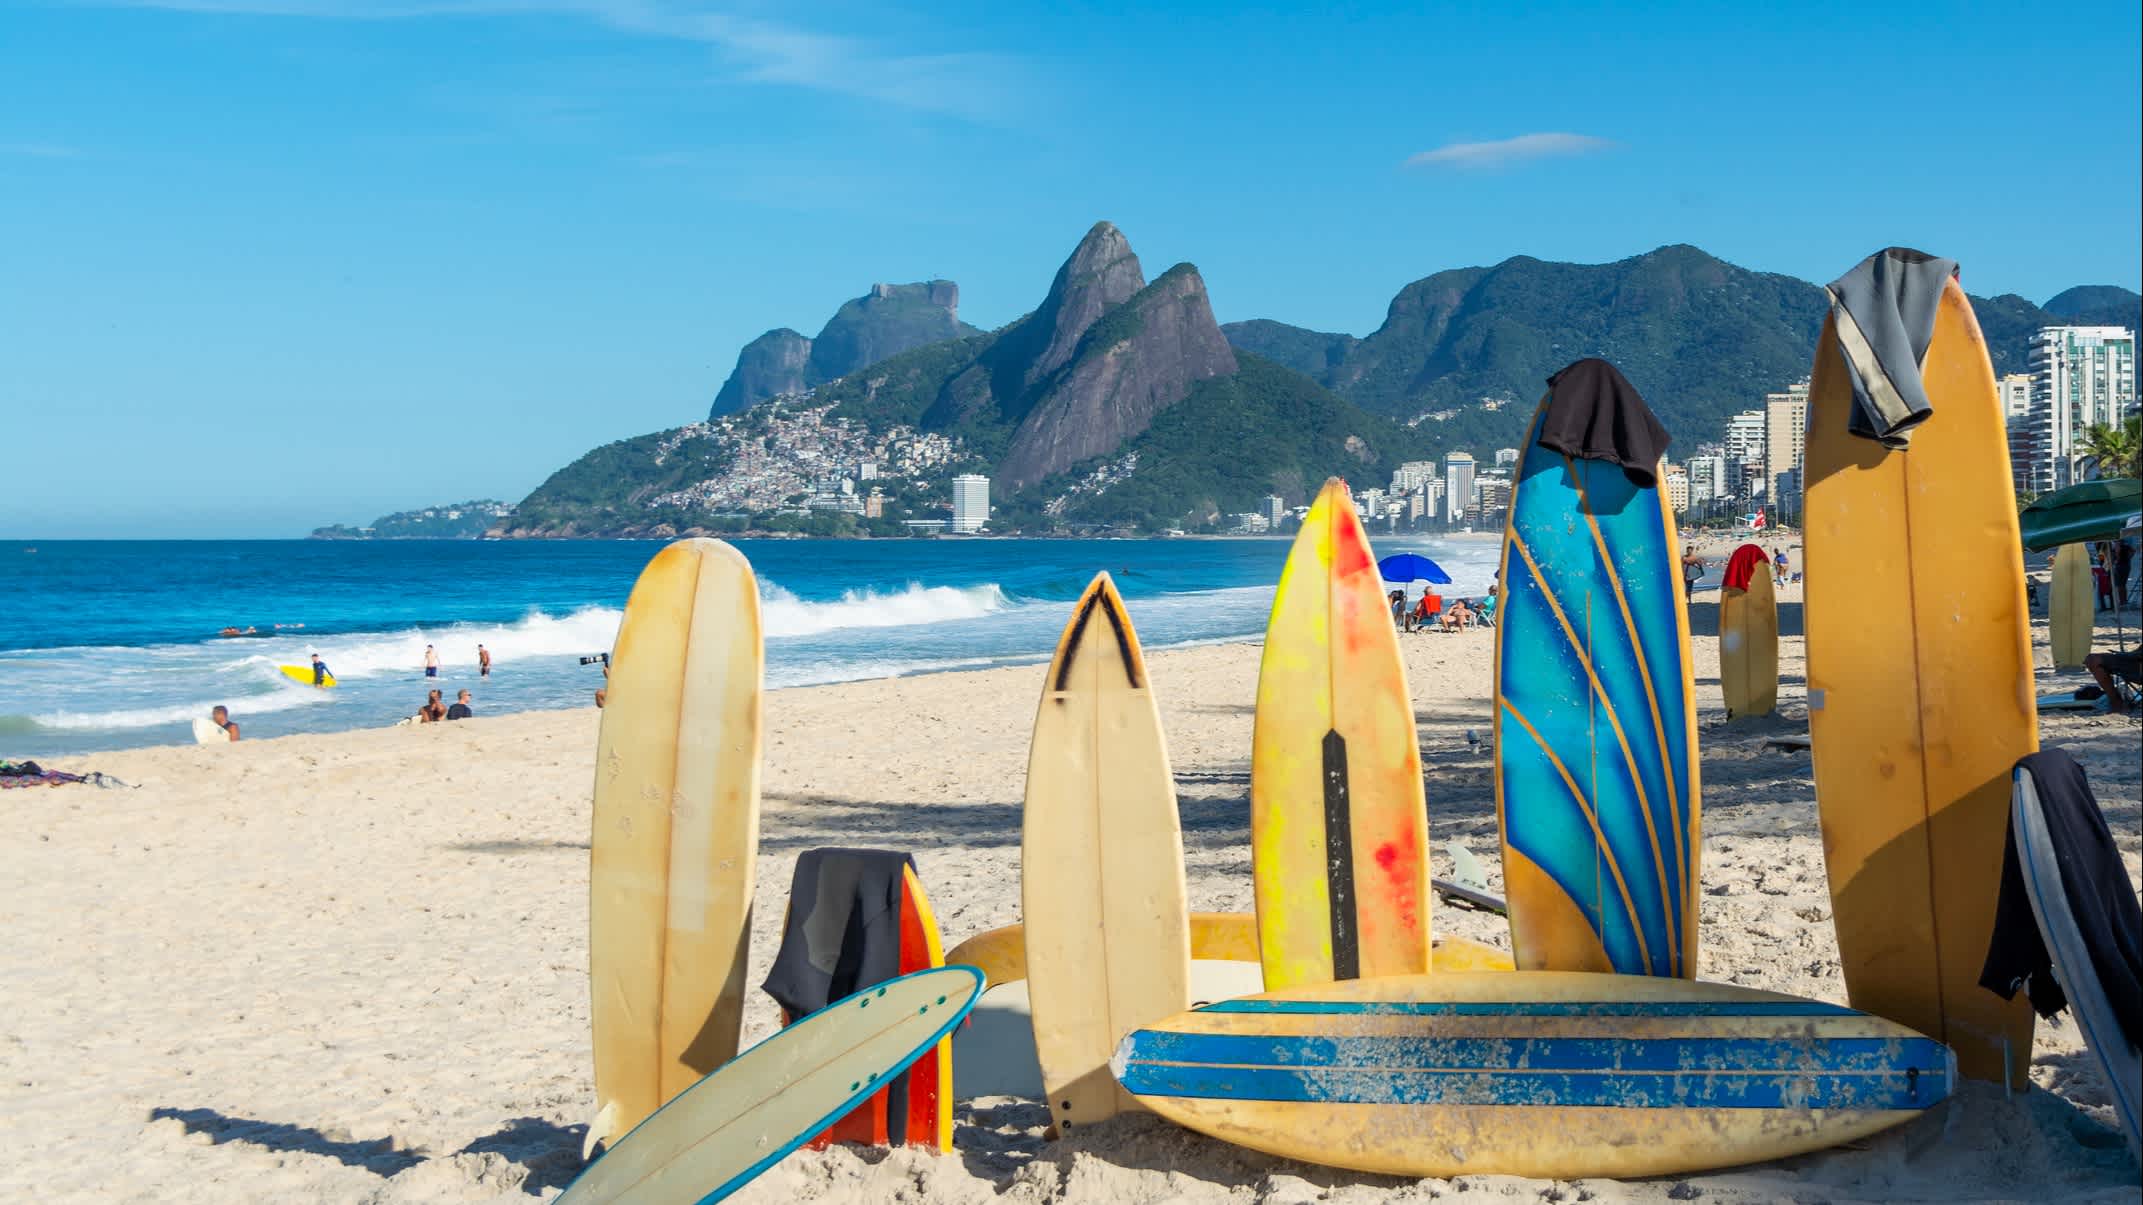 Surfbretter auf Ipanema-Strand in Rio de Janeiro, Brasilien. 

